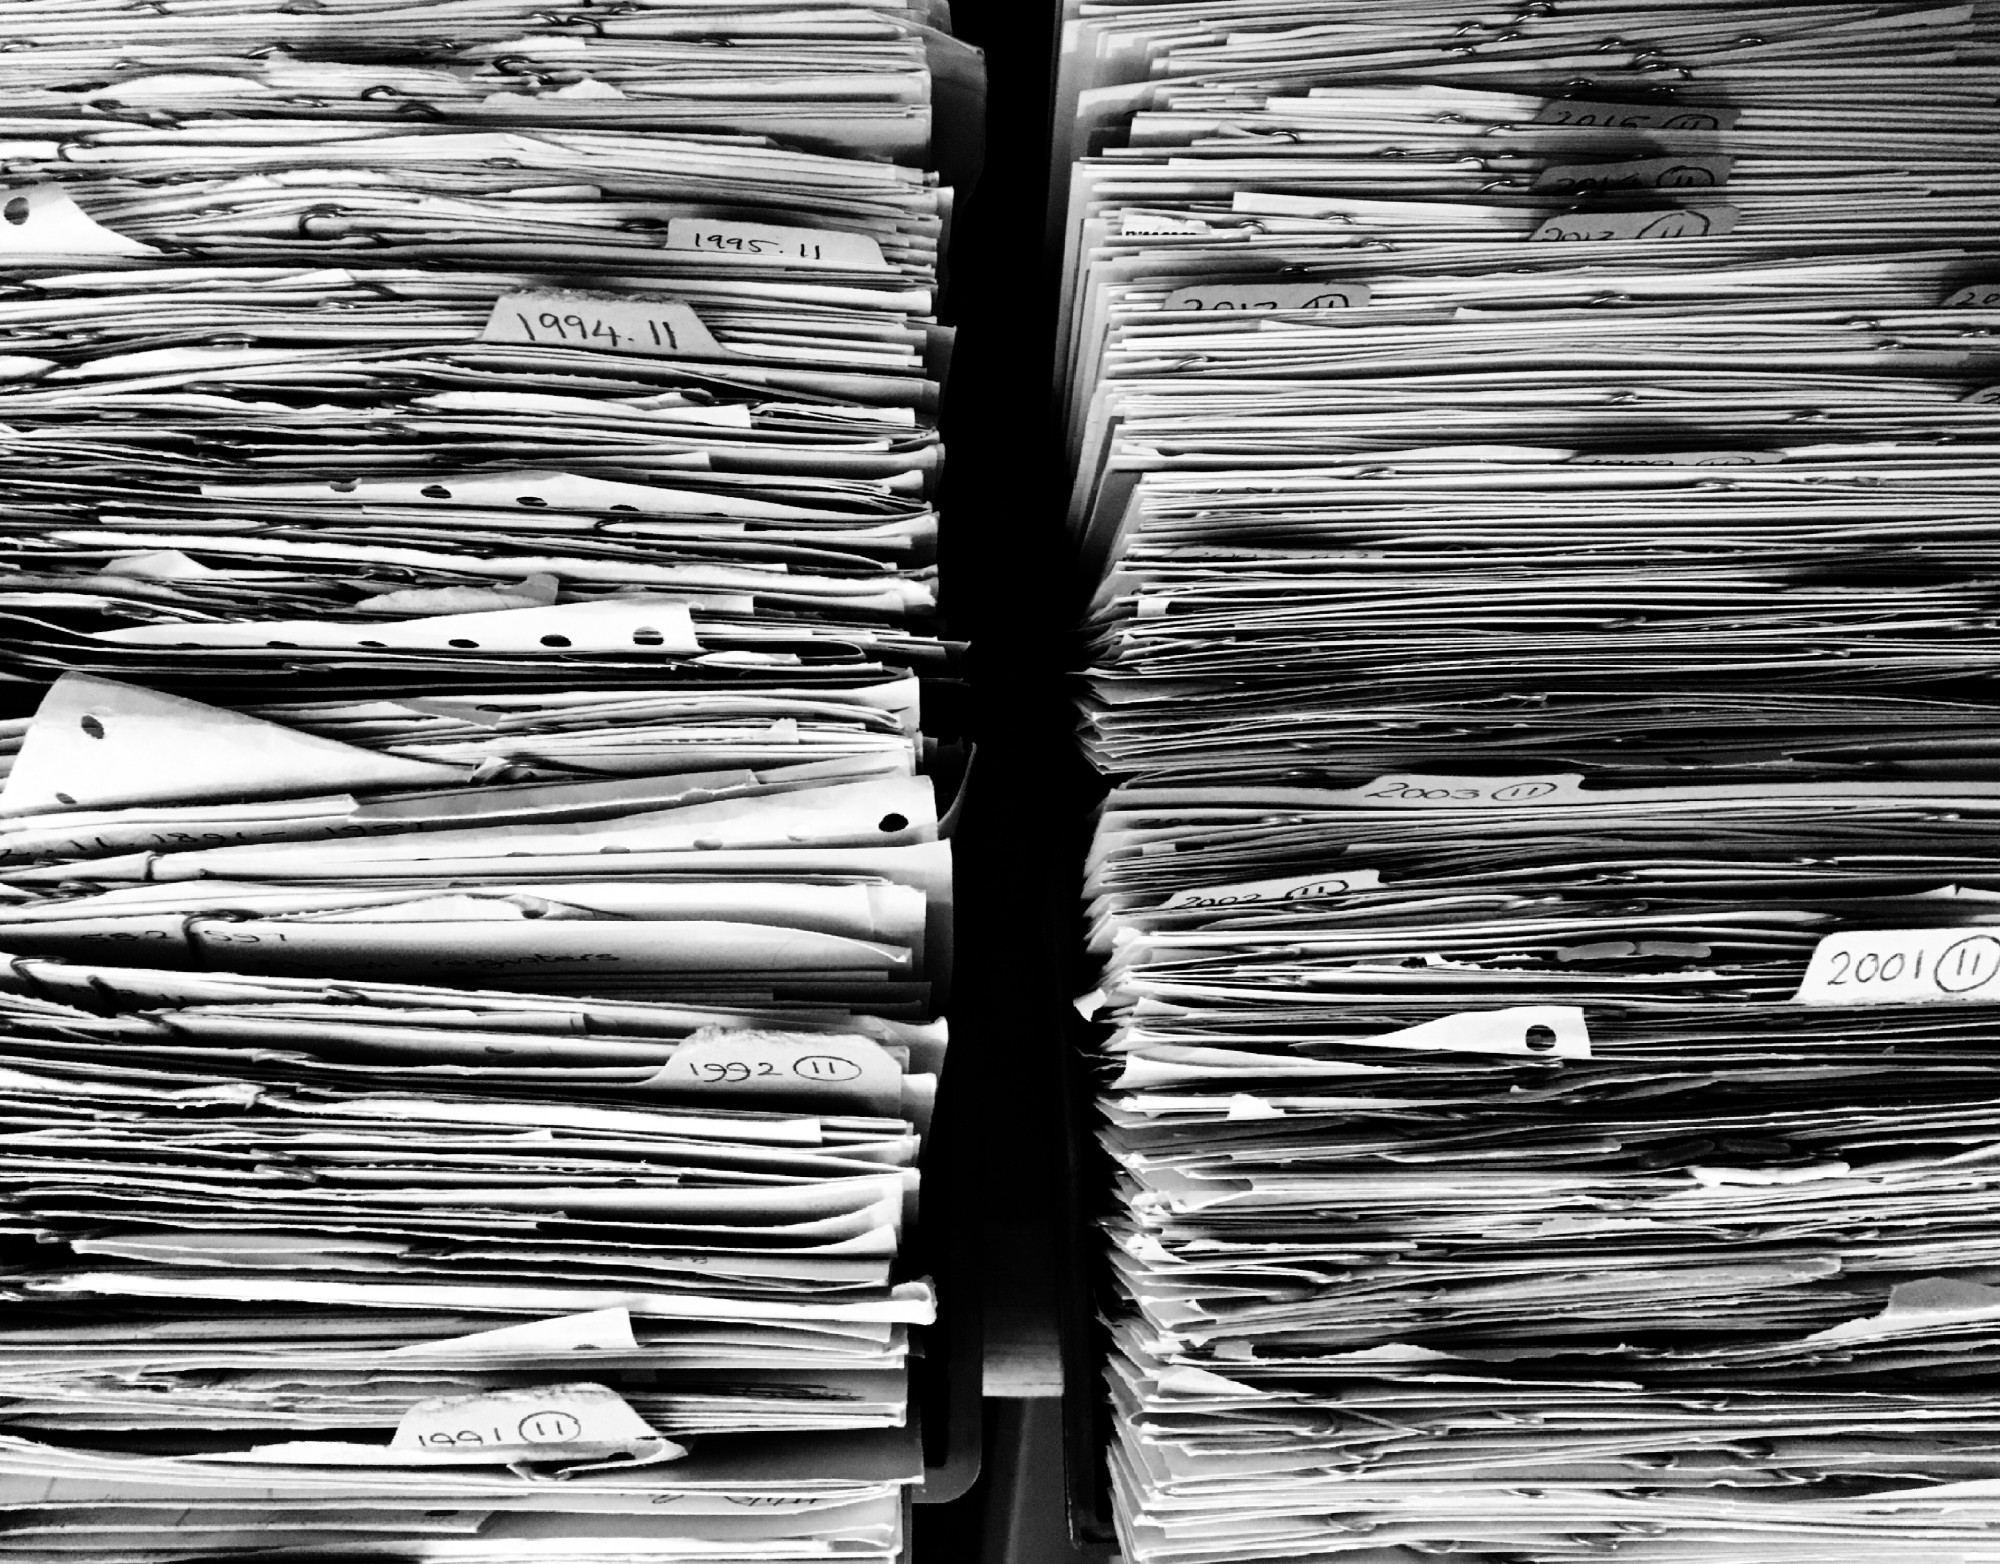 paper records in stacks